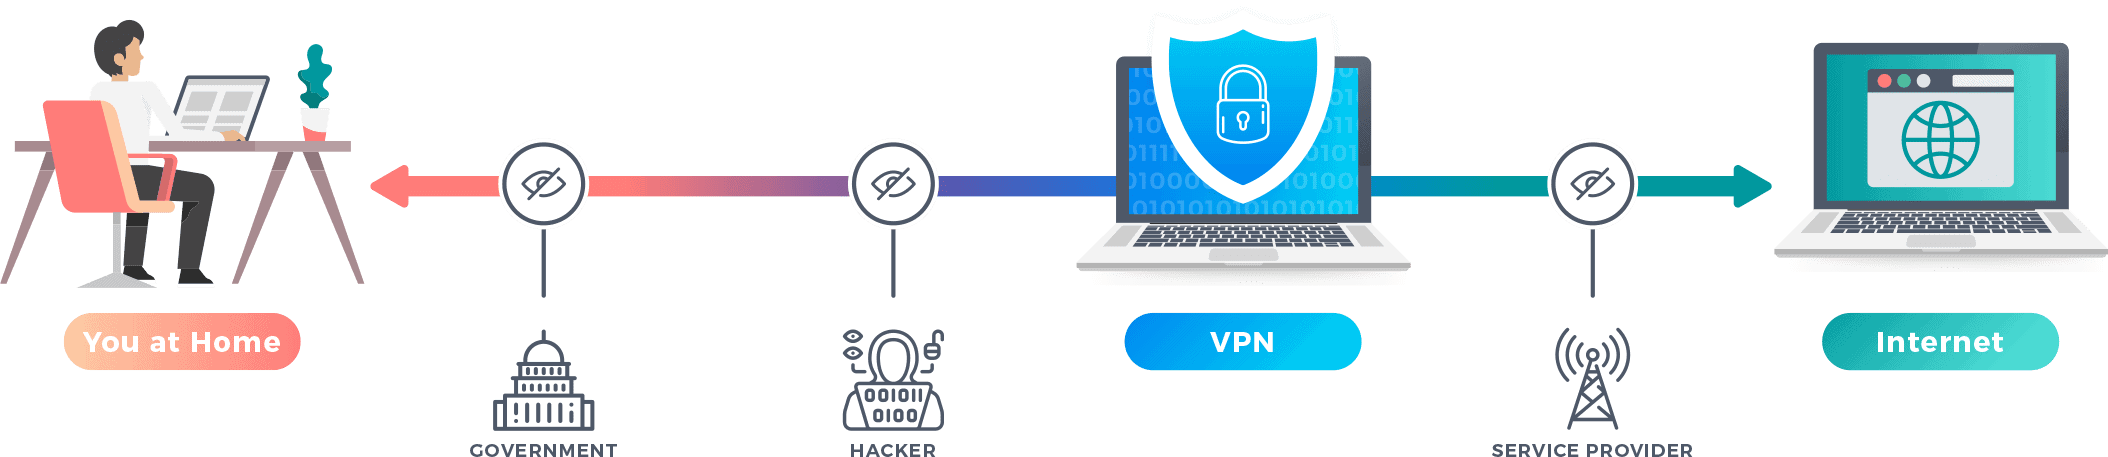 VPN. VPN картинки. VPN сервисы. Как работает впн. Впн запрещен в россии или нет